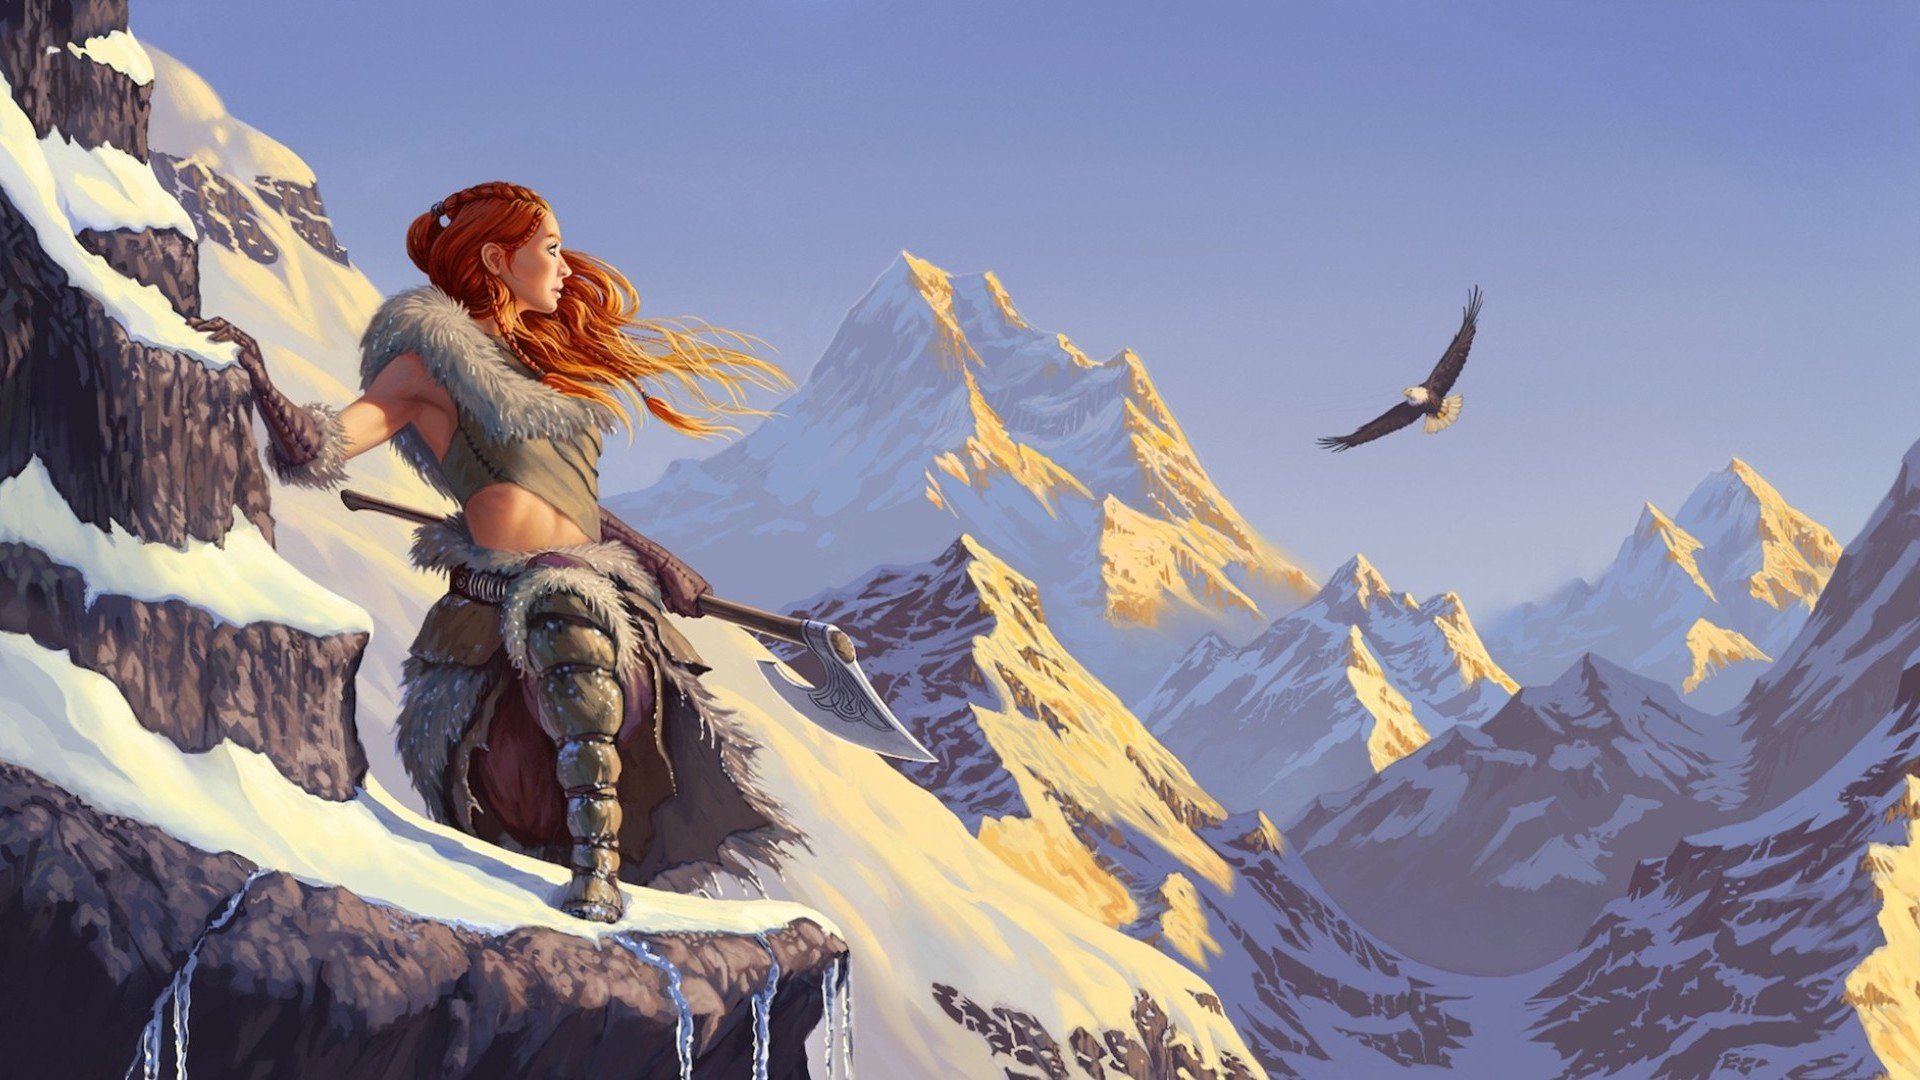 women warrior, fantasy, axe, eagle, flight, mountain